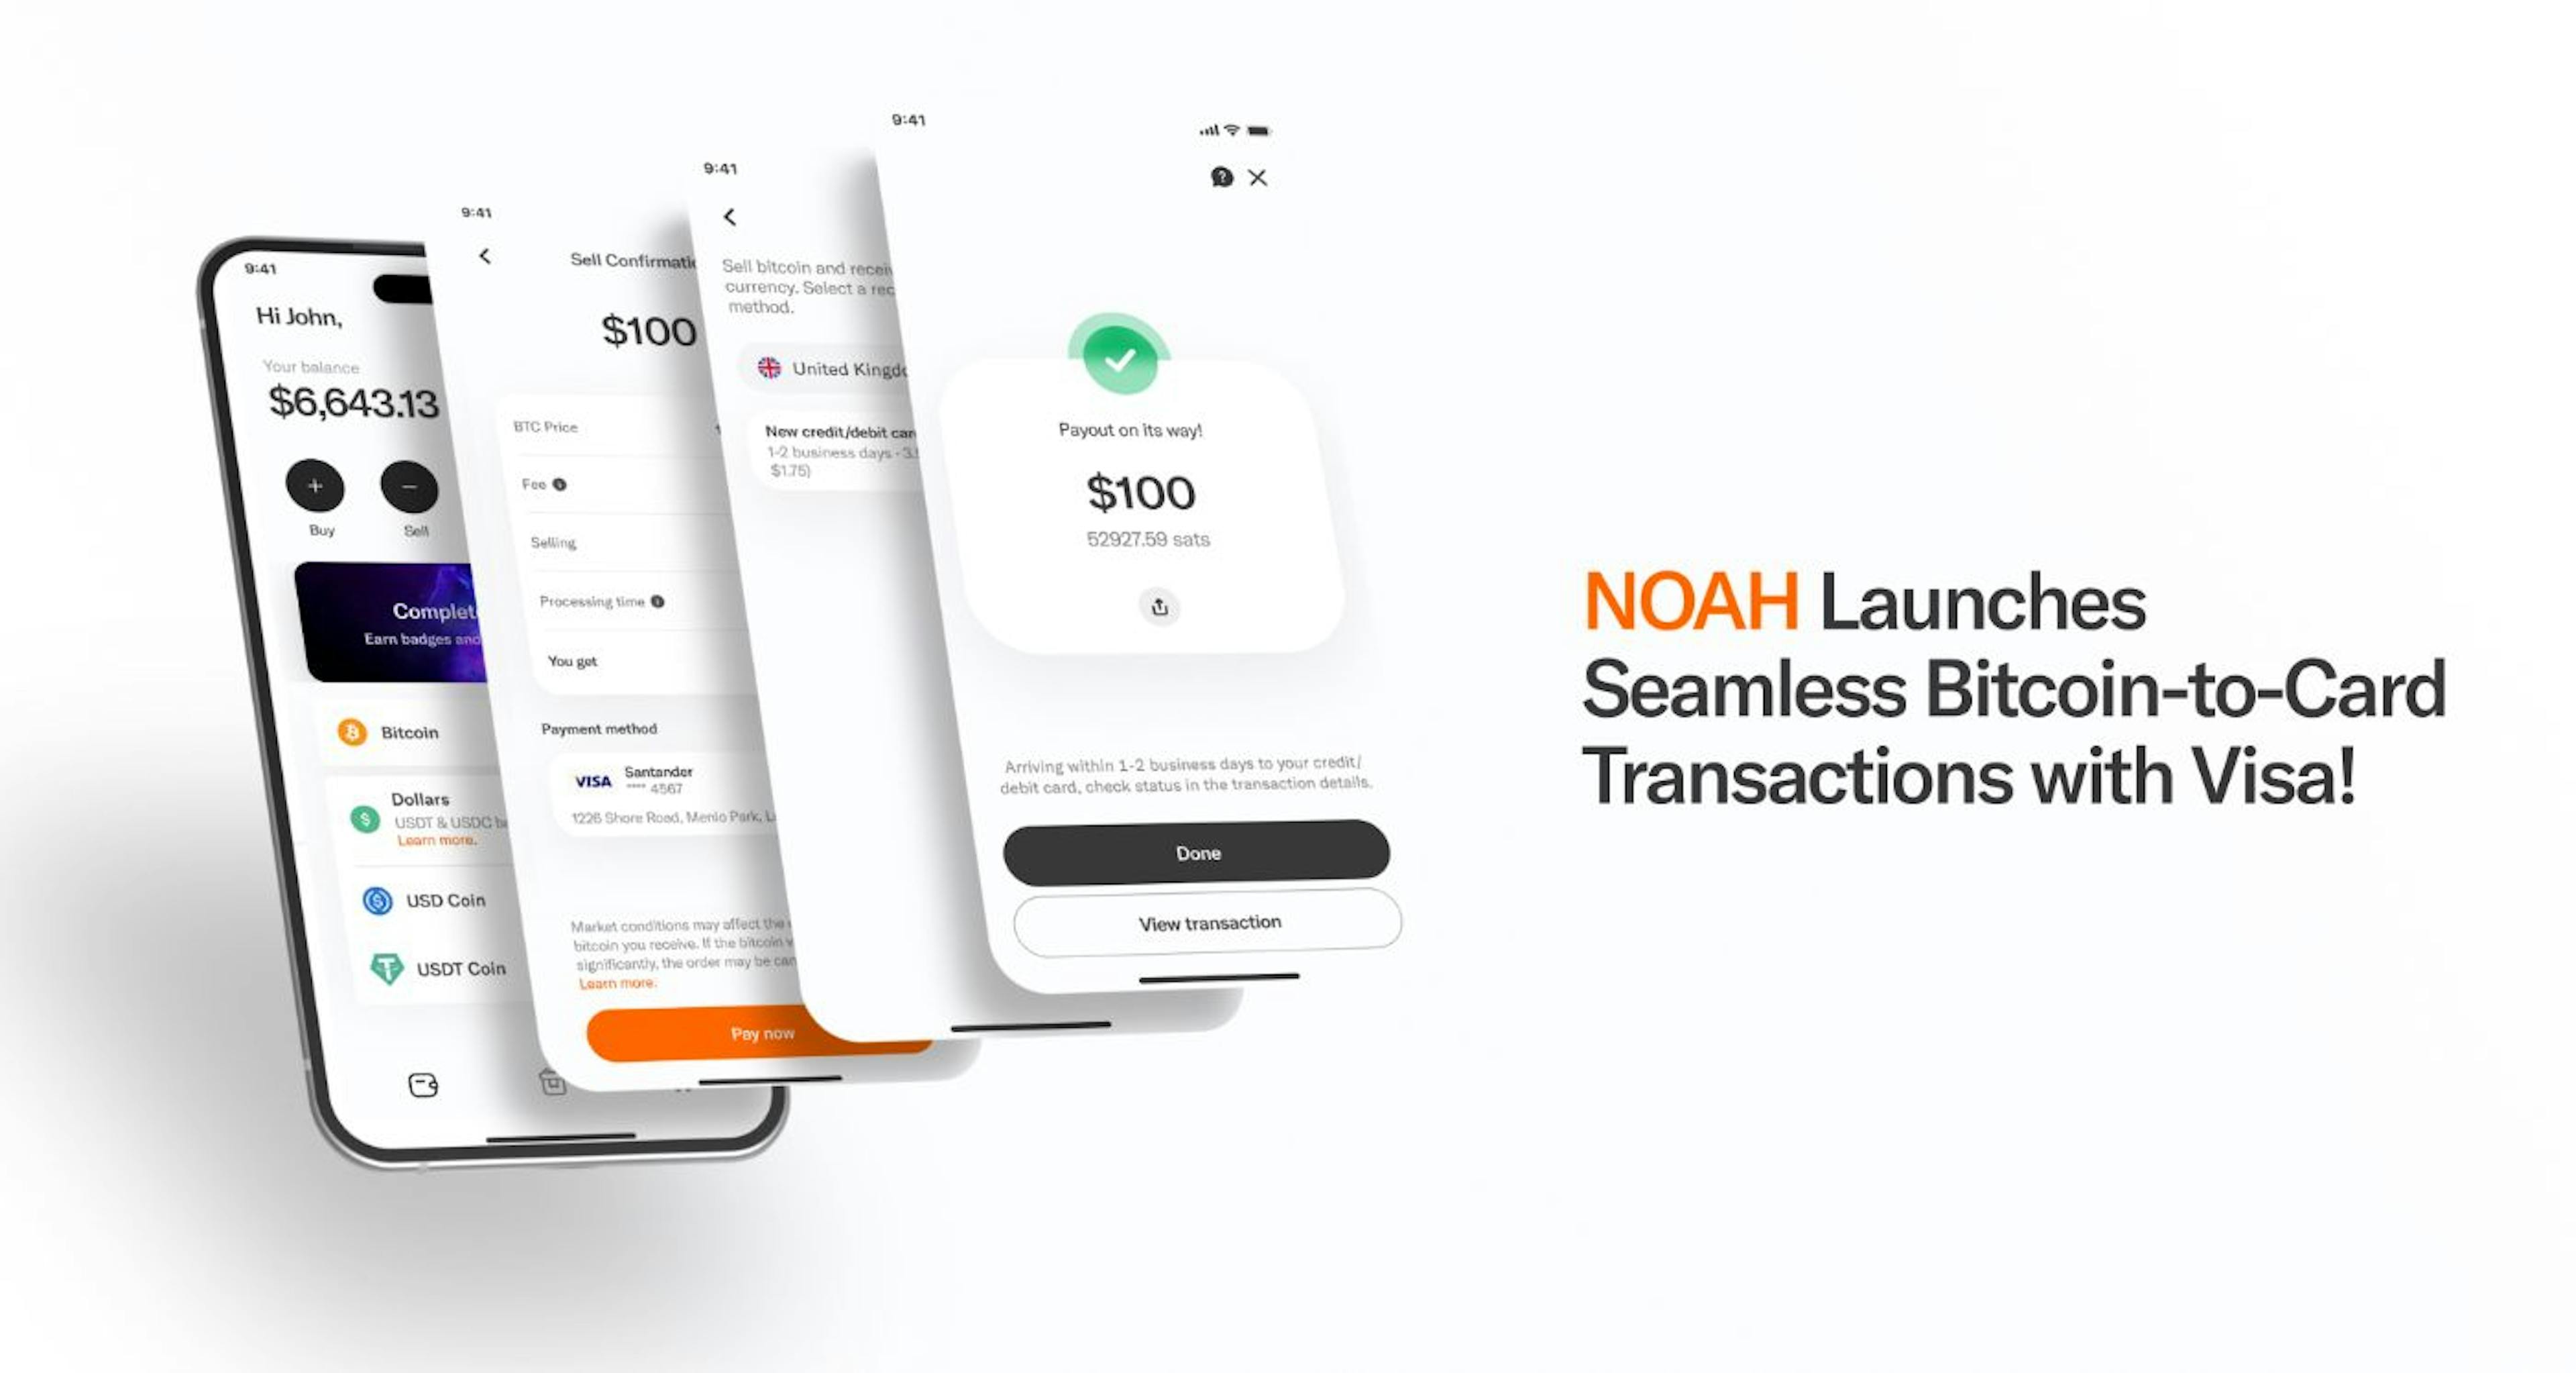 featured image - NOAH führt nahtlose Bitcoin-zu-Karte-Transaktionen mit Visa ein!